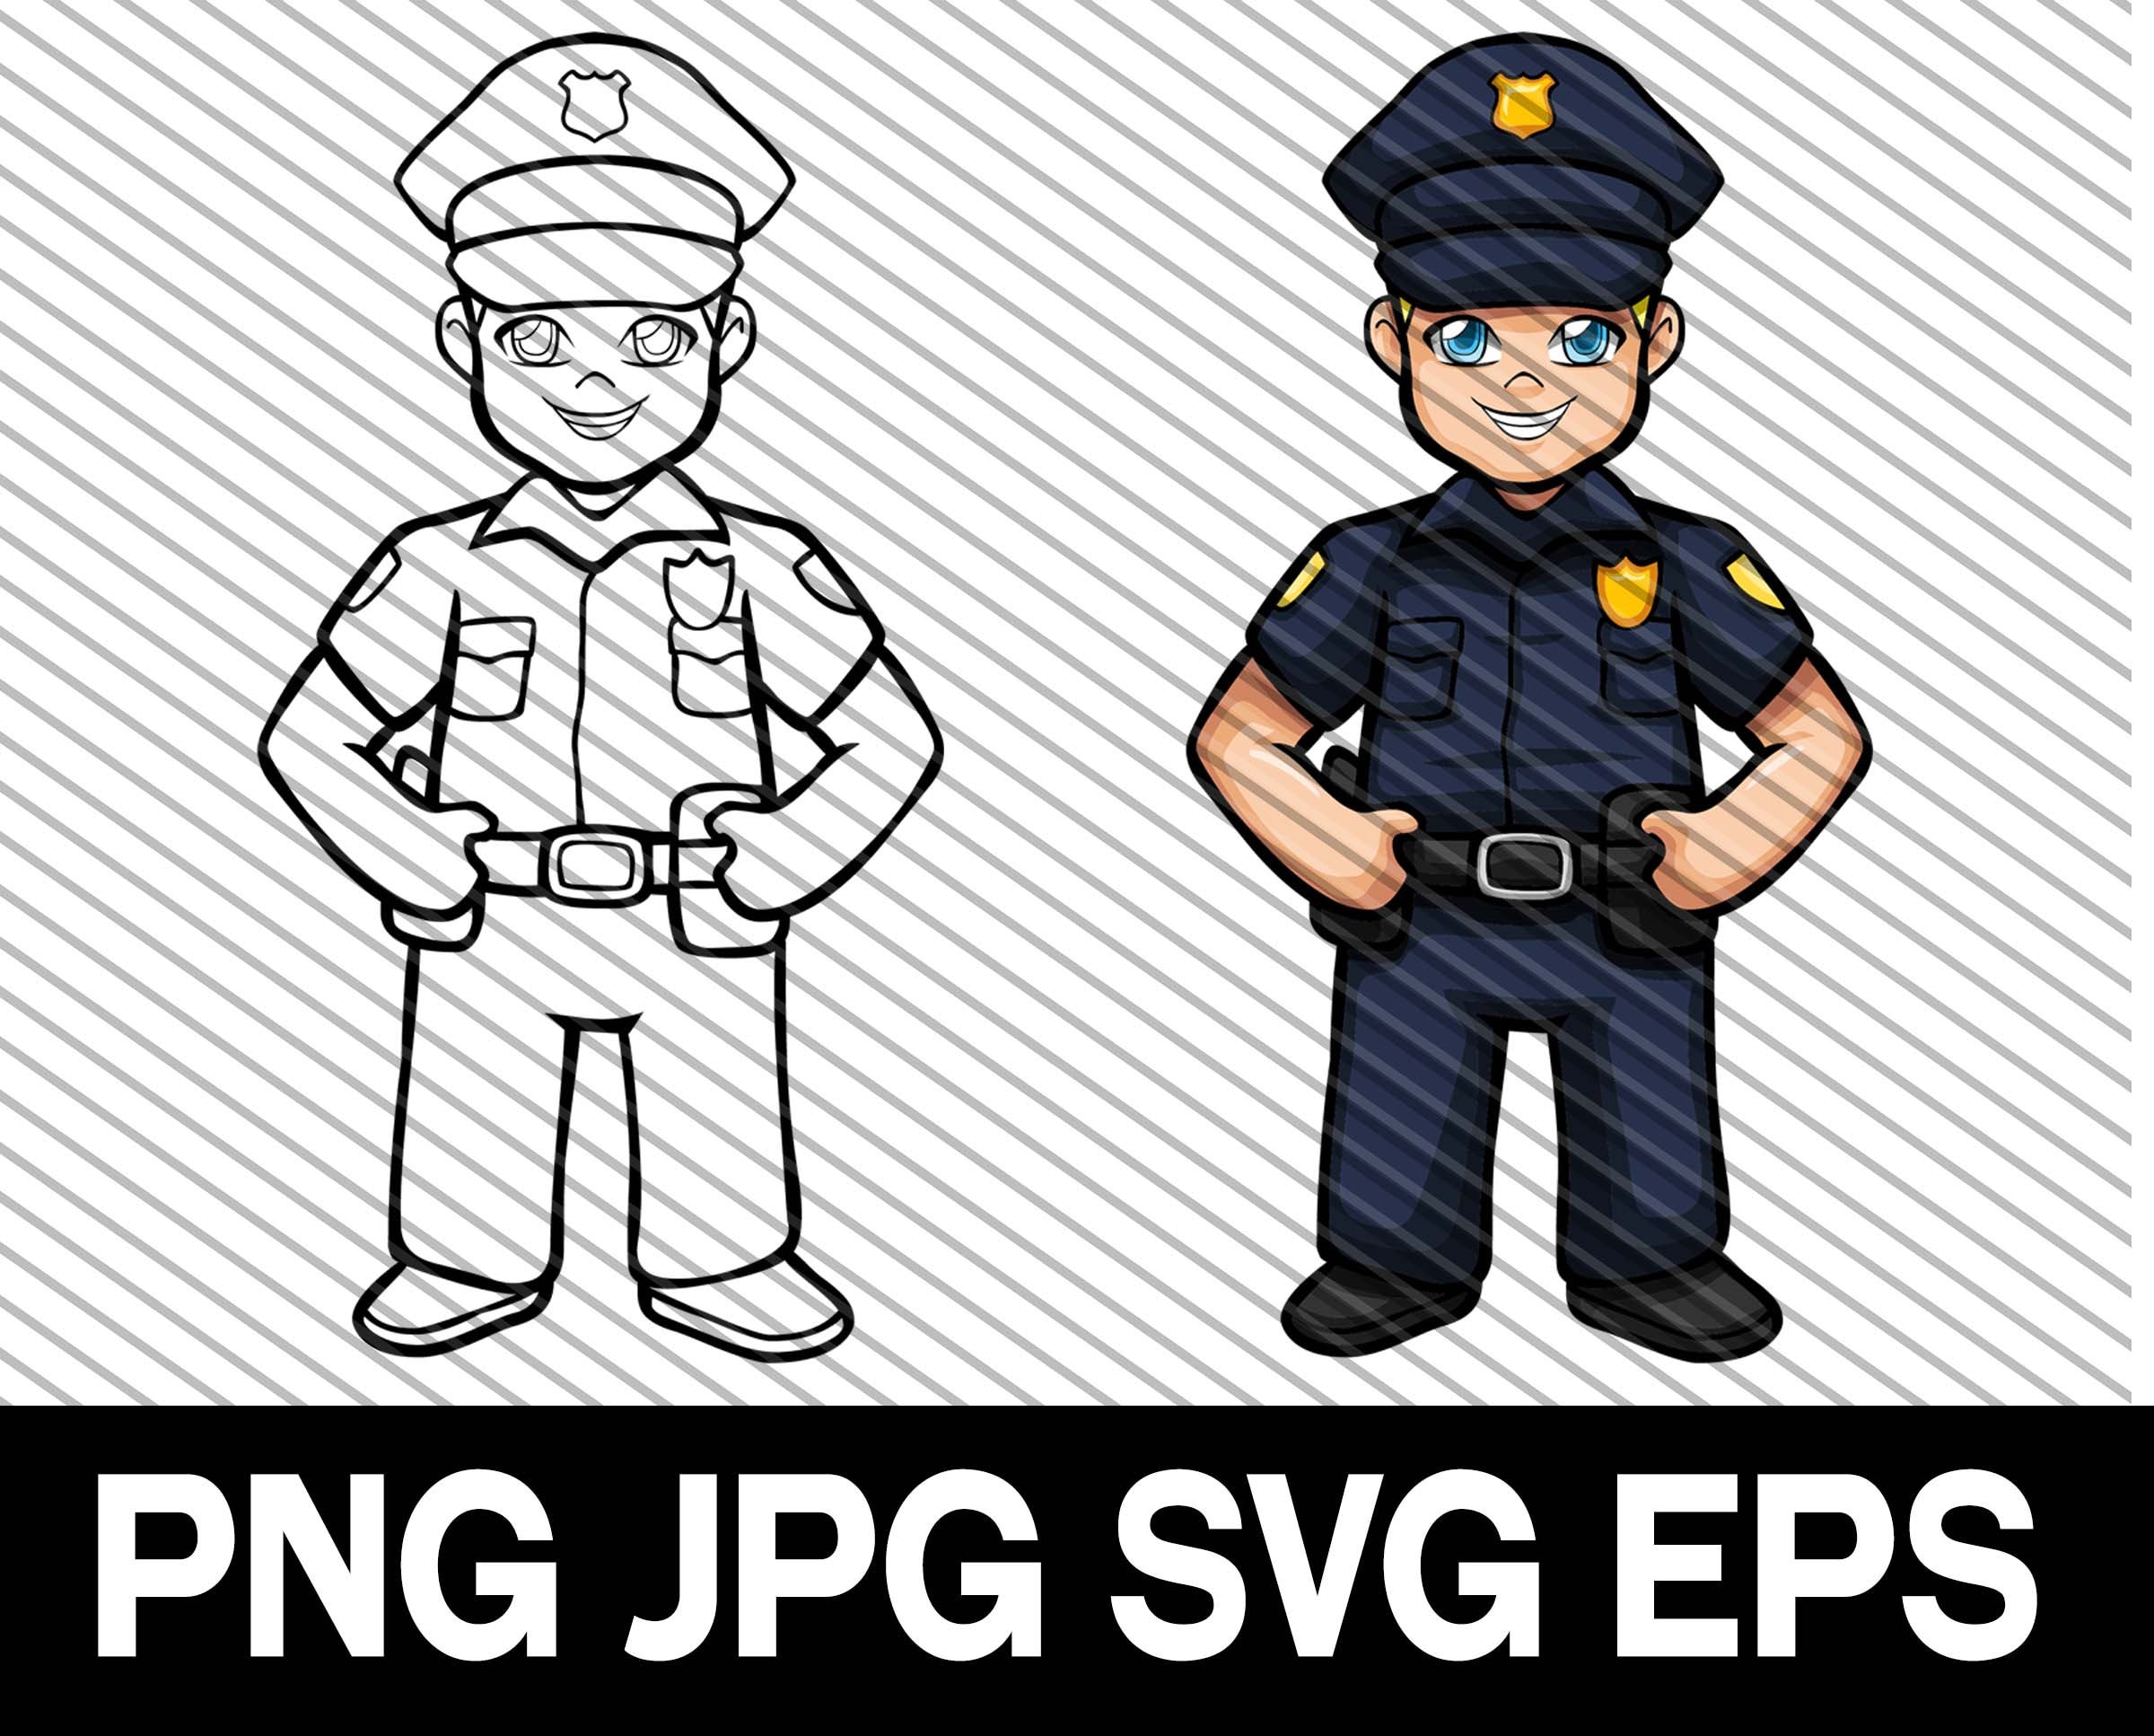 Polizei, PNG, ClipArt, SVG, DXF, geschnittene Datei, Polizist,  Polizeiuniform - .de